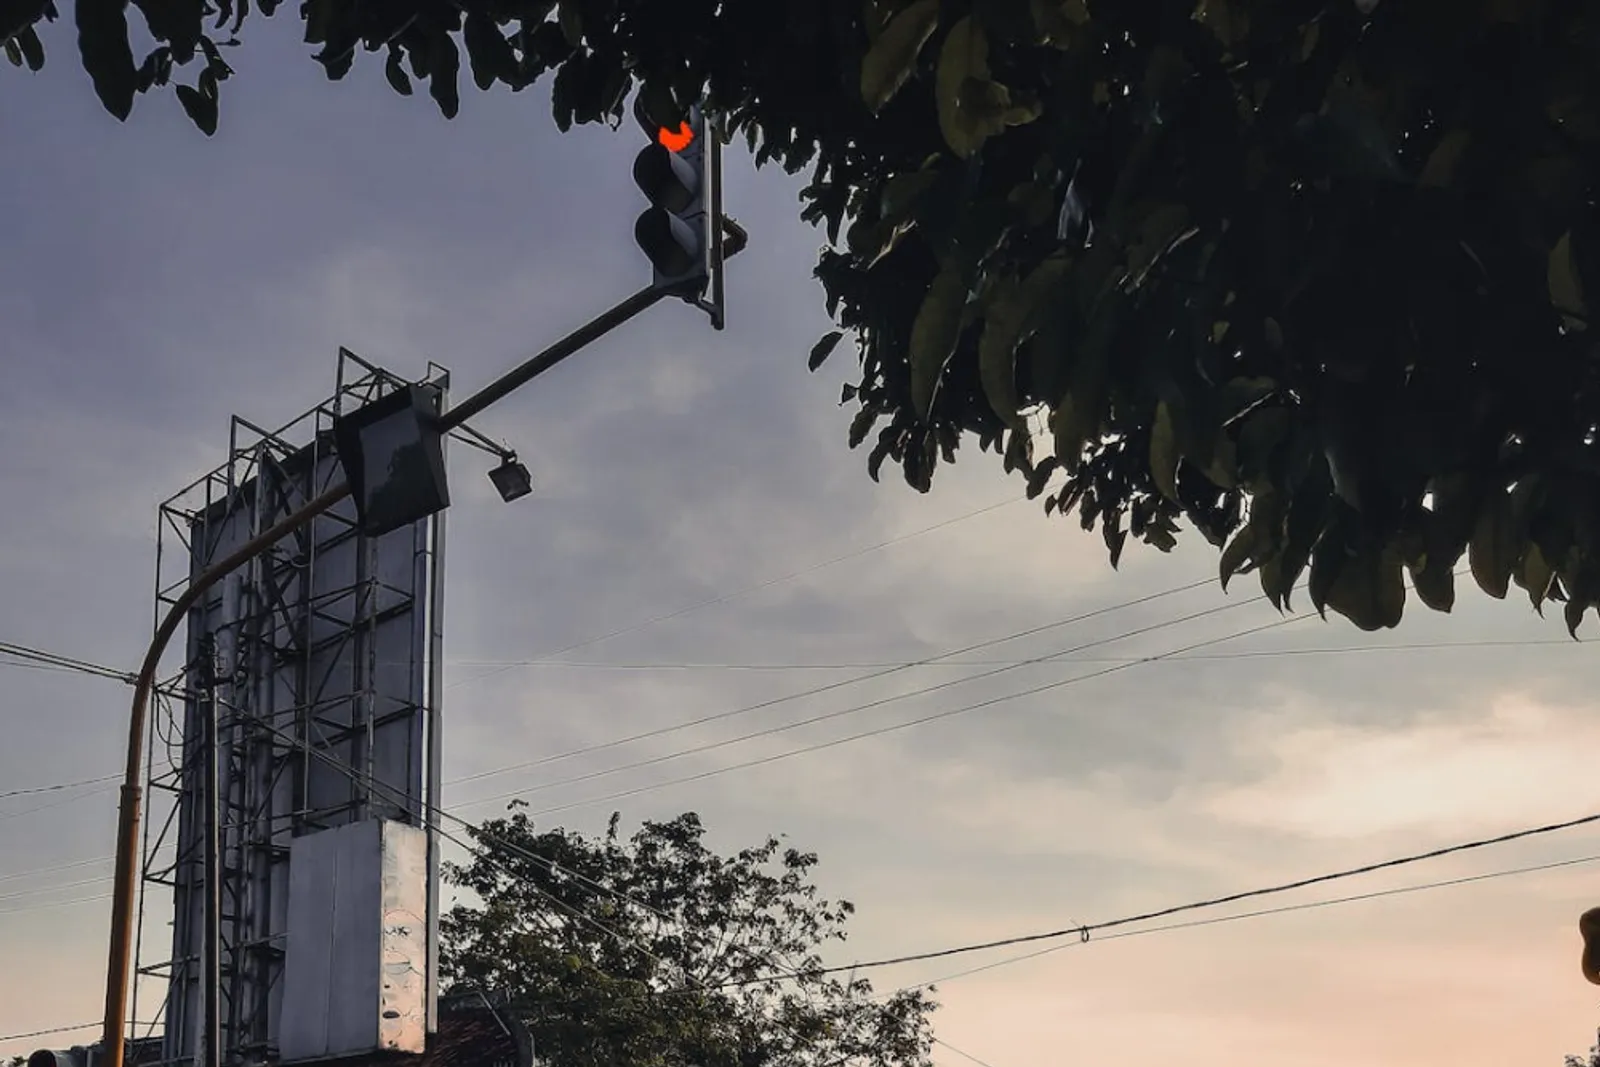 5 Lampu Merah Terlama di Indonesia, Sampai 12 Menit!